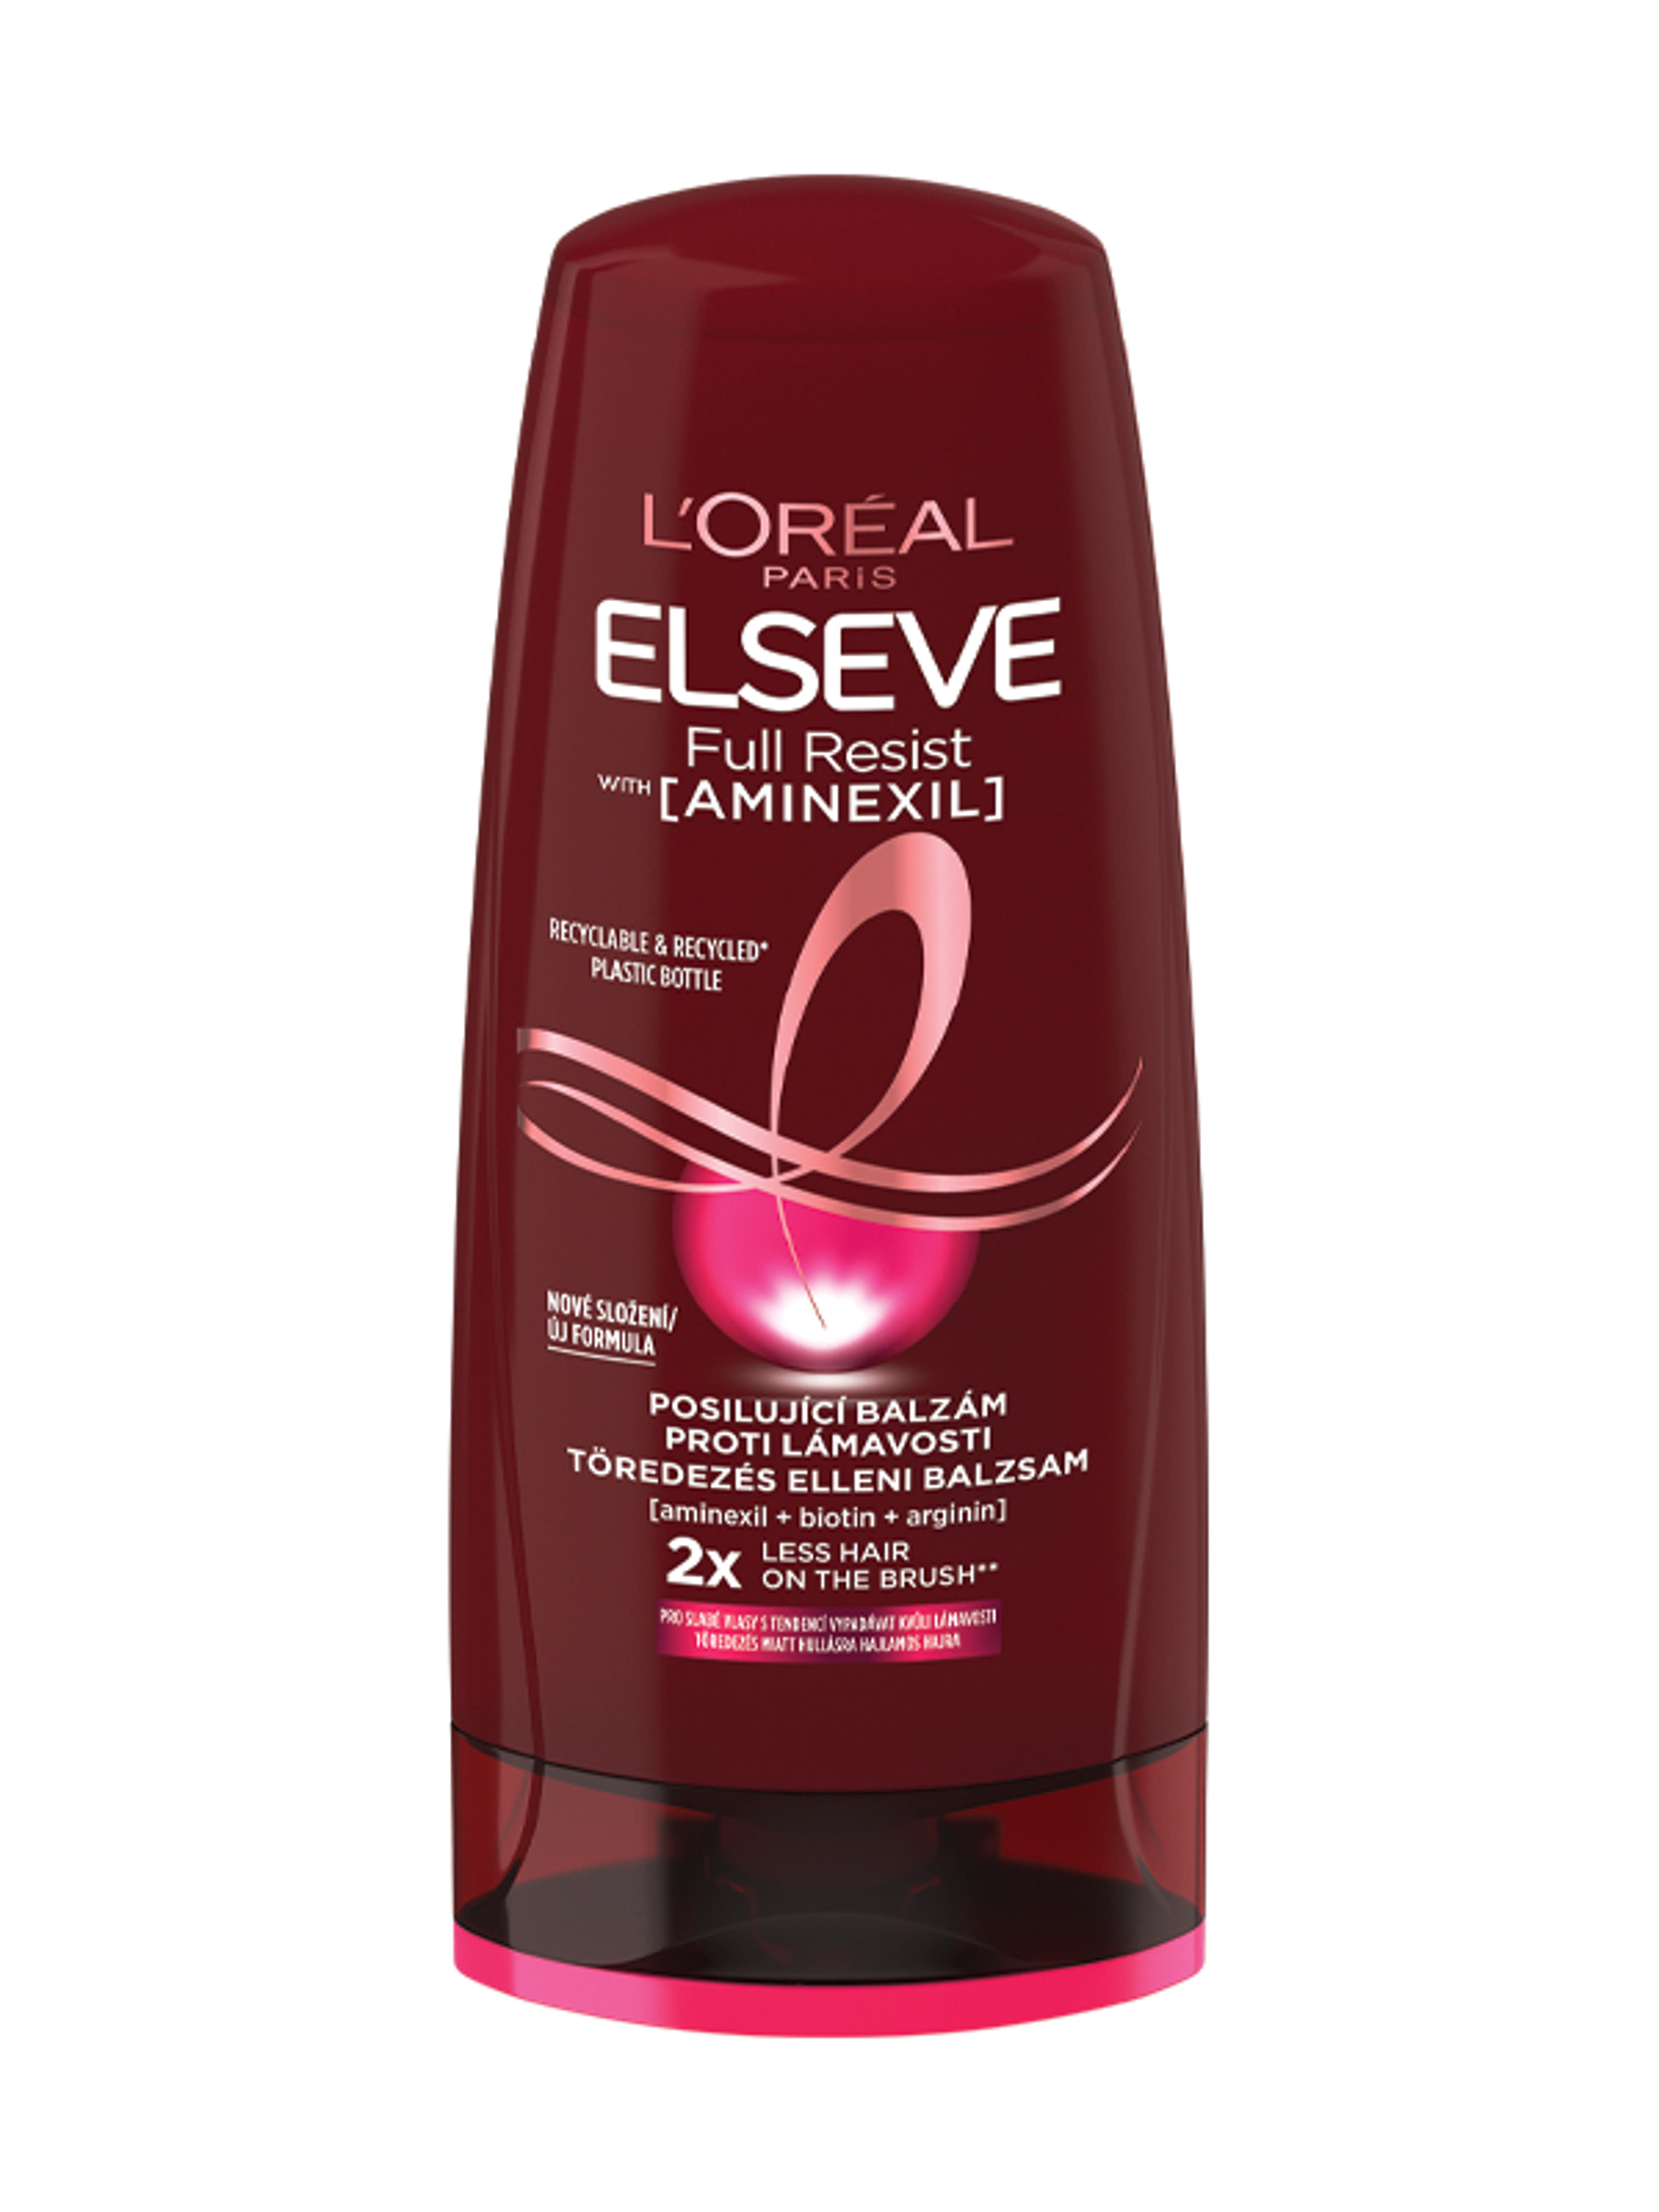 L'Oréal Paris Elseve Full Resist hajerősítő balzsam gyenge, hullásra hajlamos hajra - 200 ml-3